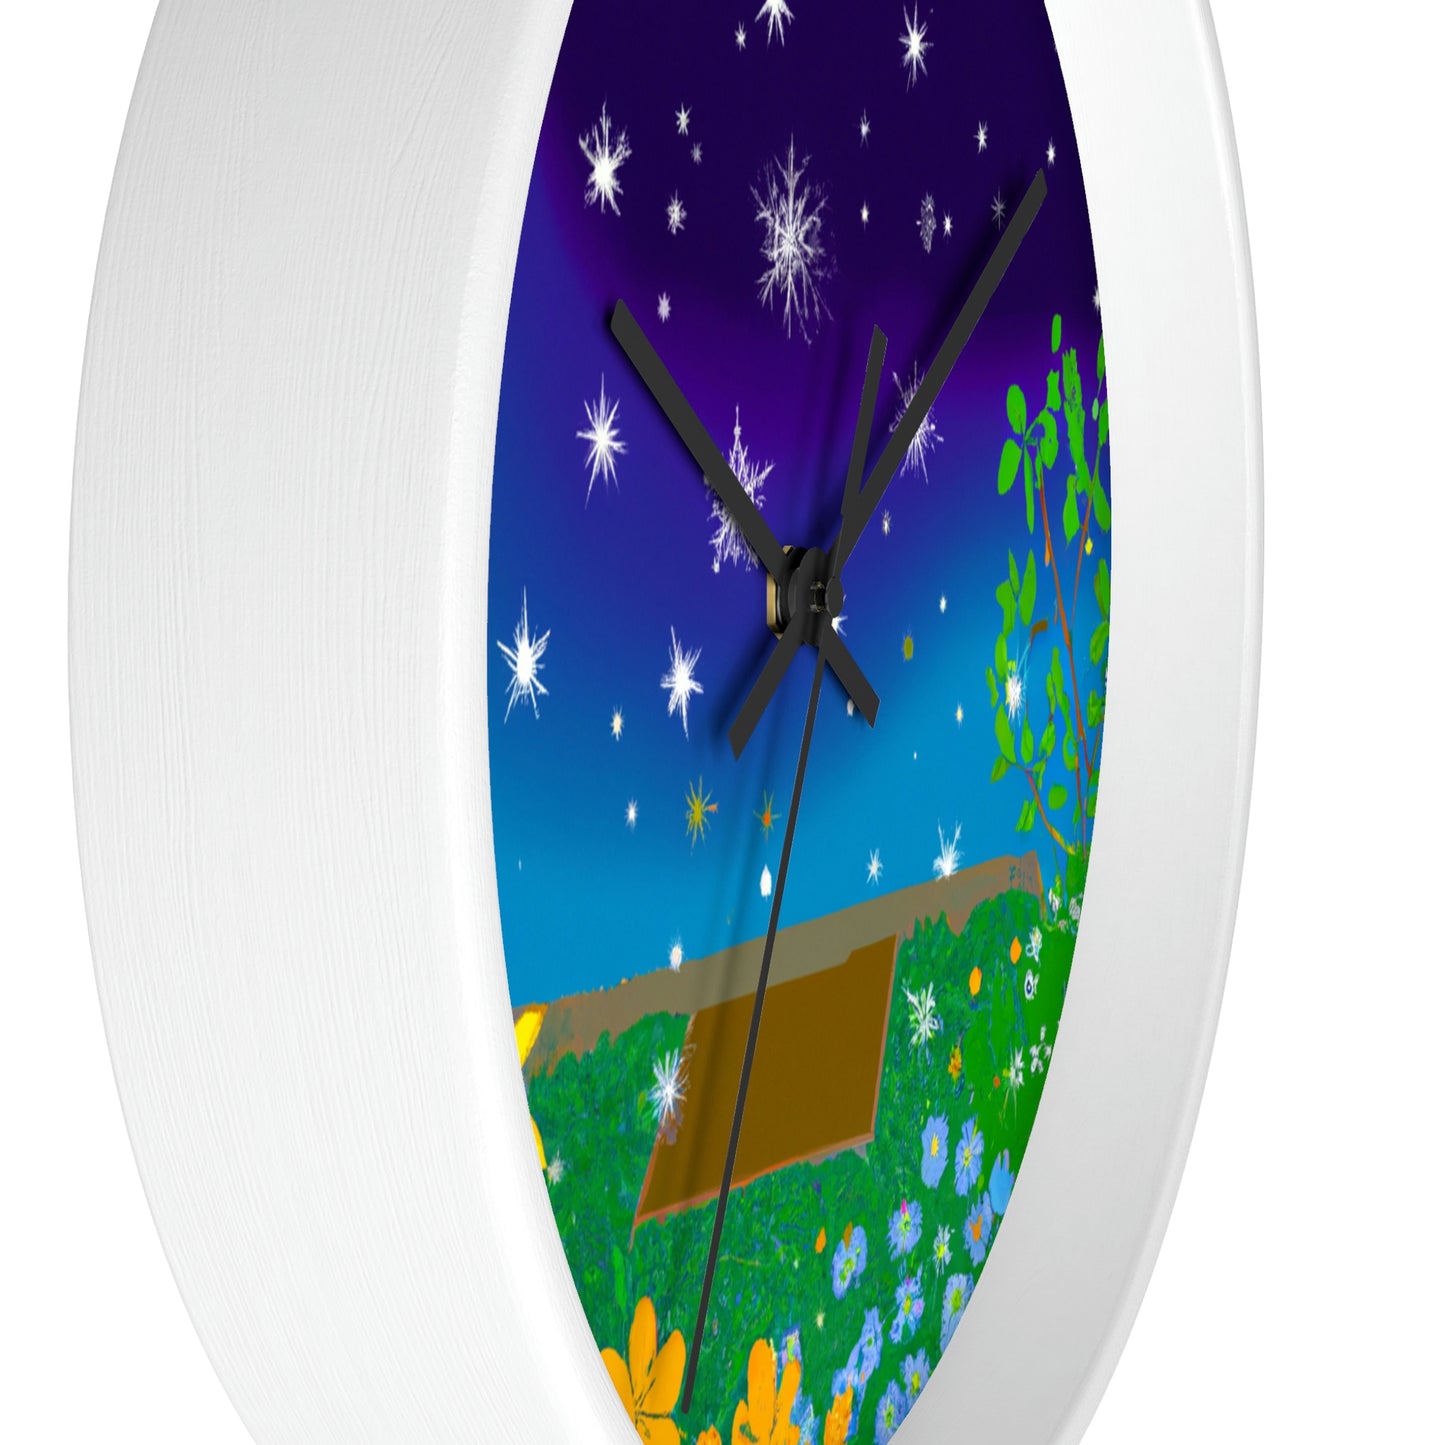 "A Celestial Garden of Color" - The Alien Wall Clock